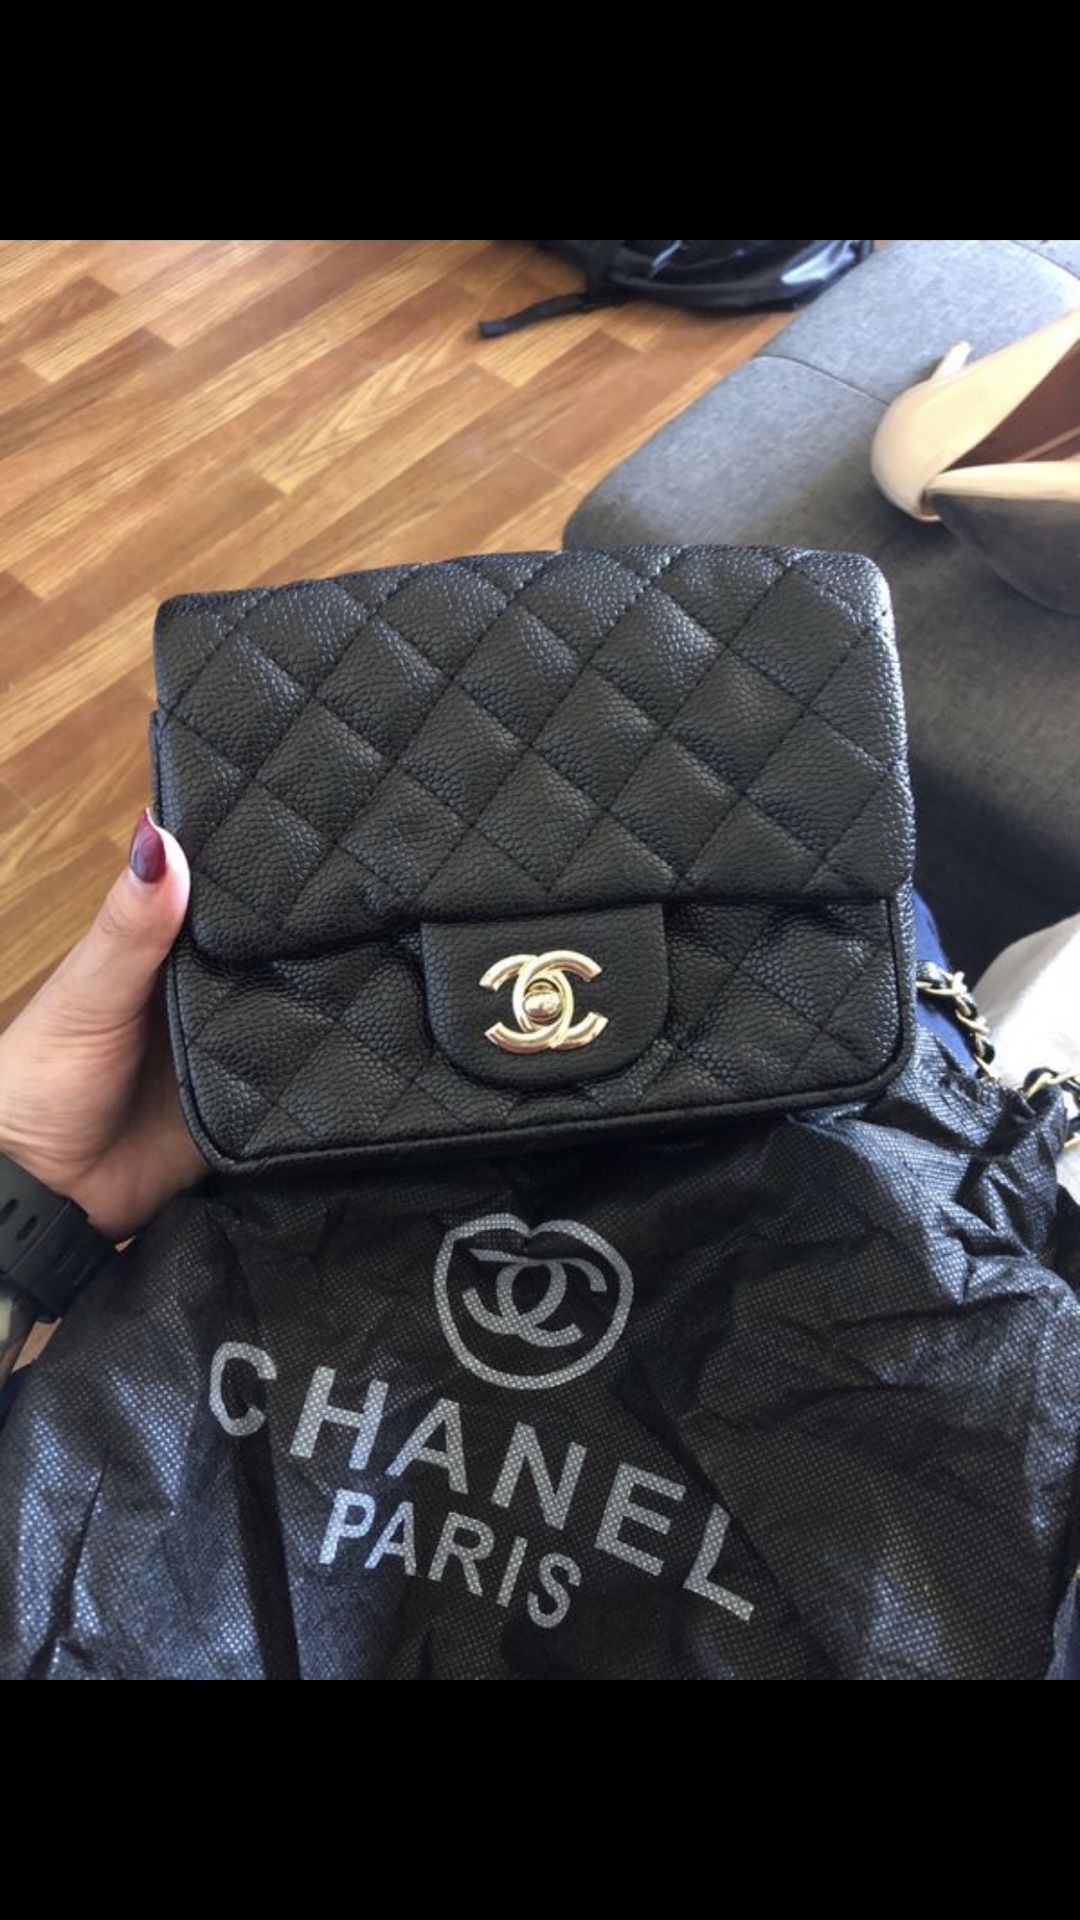 Chanel small bag